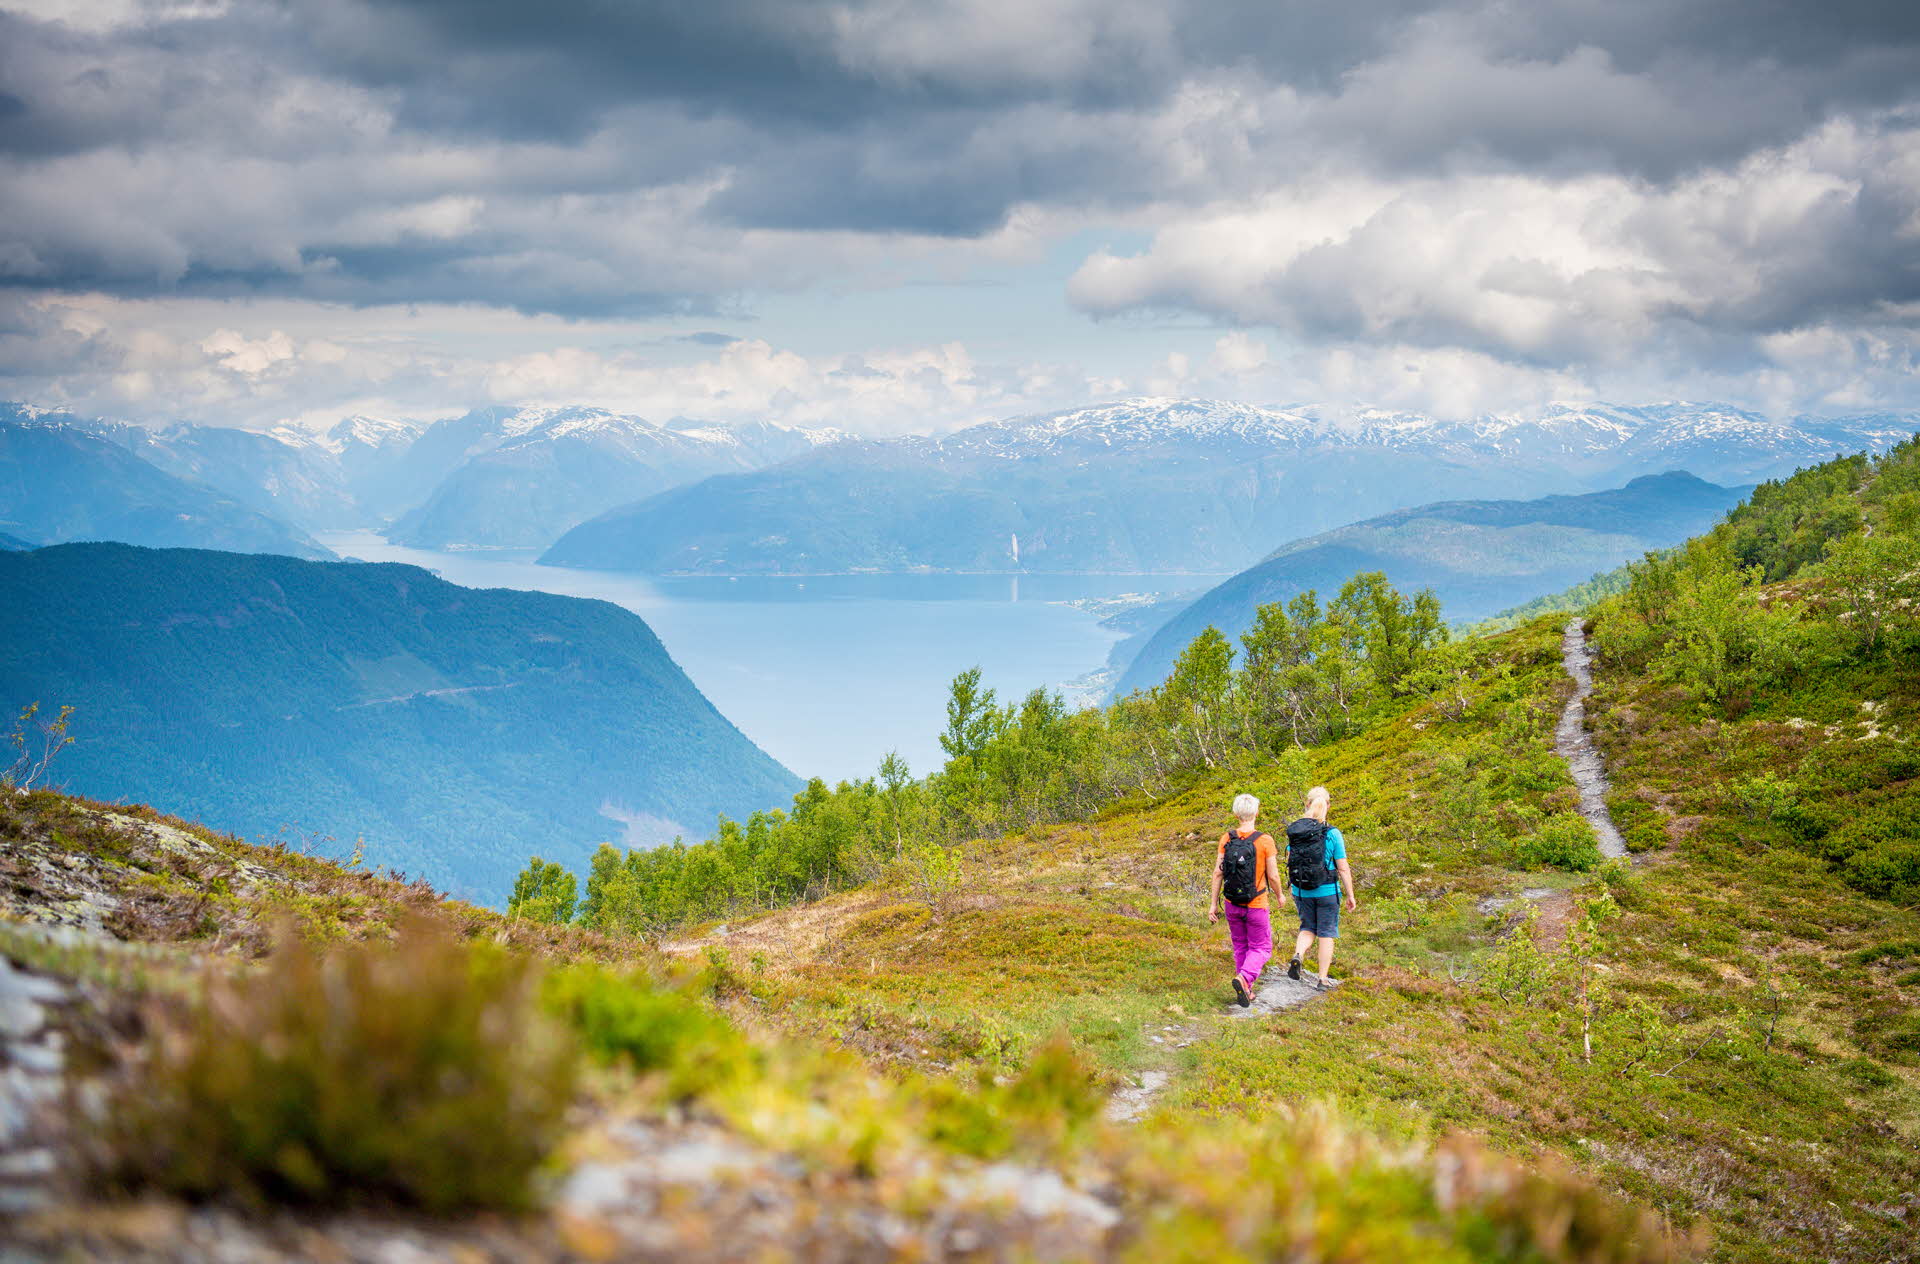 ソグネフィヨルドを望む山道を歩く2人の女性